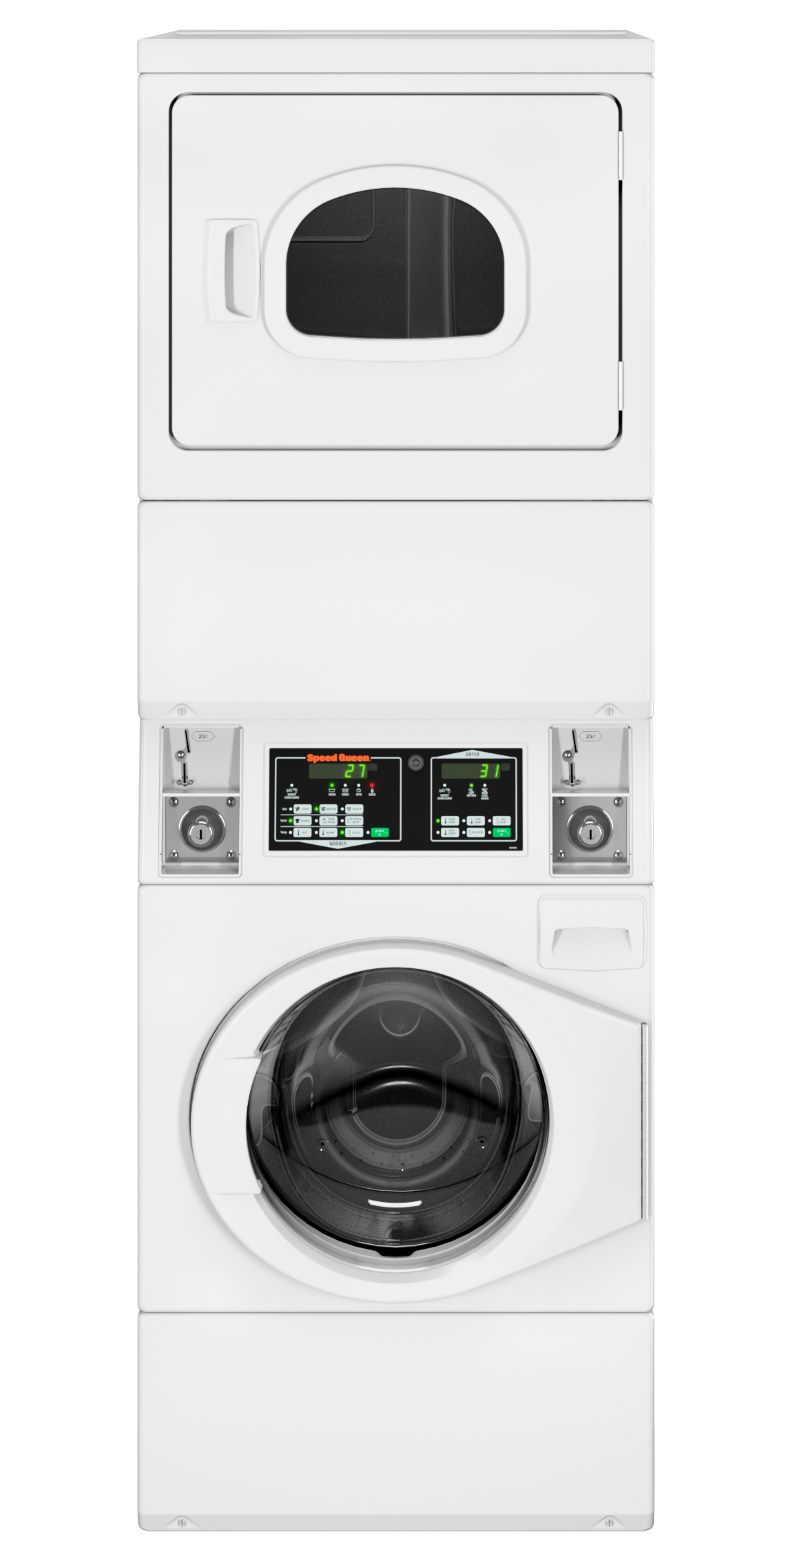 speed queen washing machine and dryer stack - stenxa - stgnxa